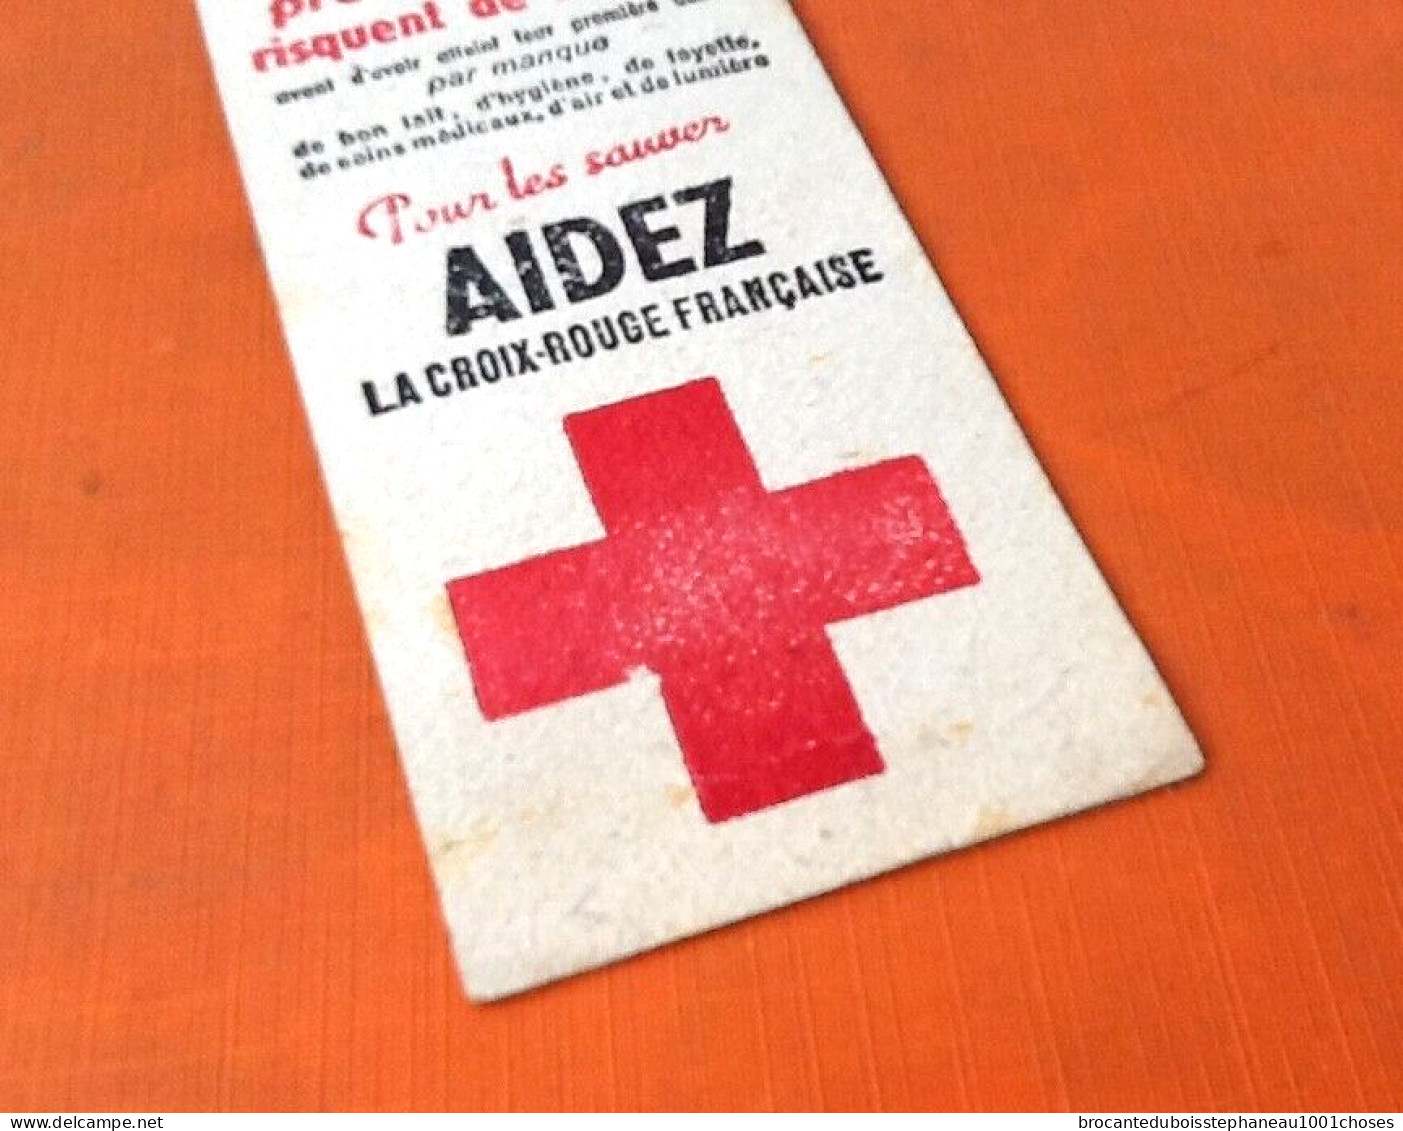 Ancien Signet / Marque-page publicitaire La Croix-Rouge